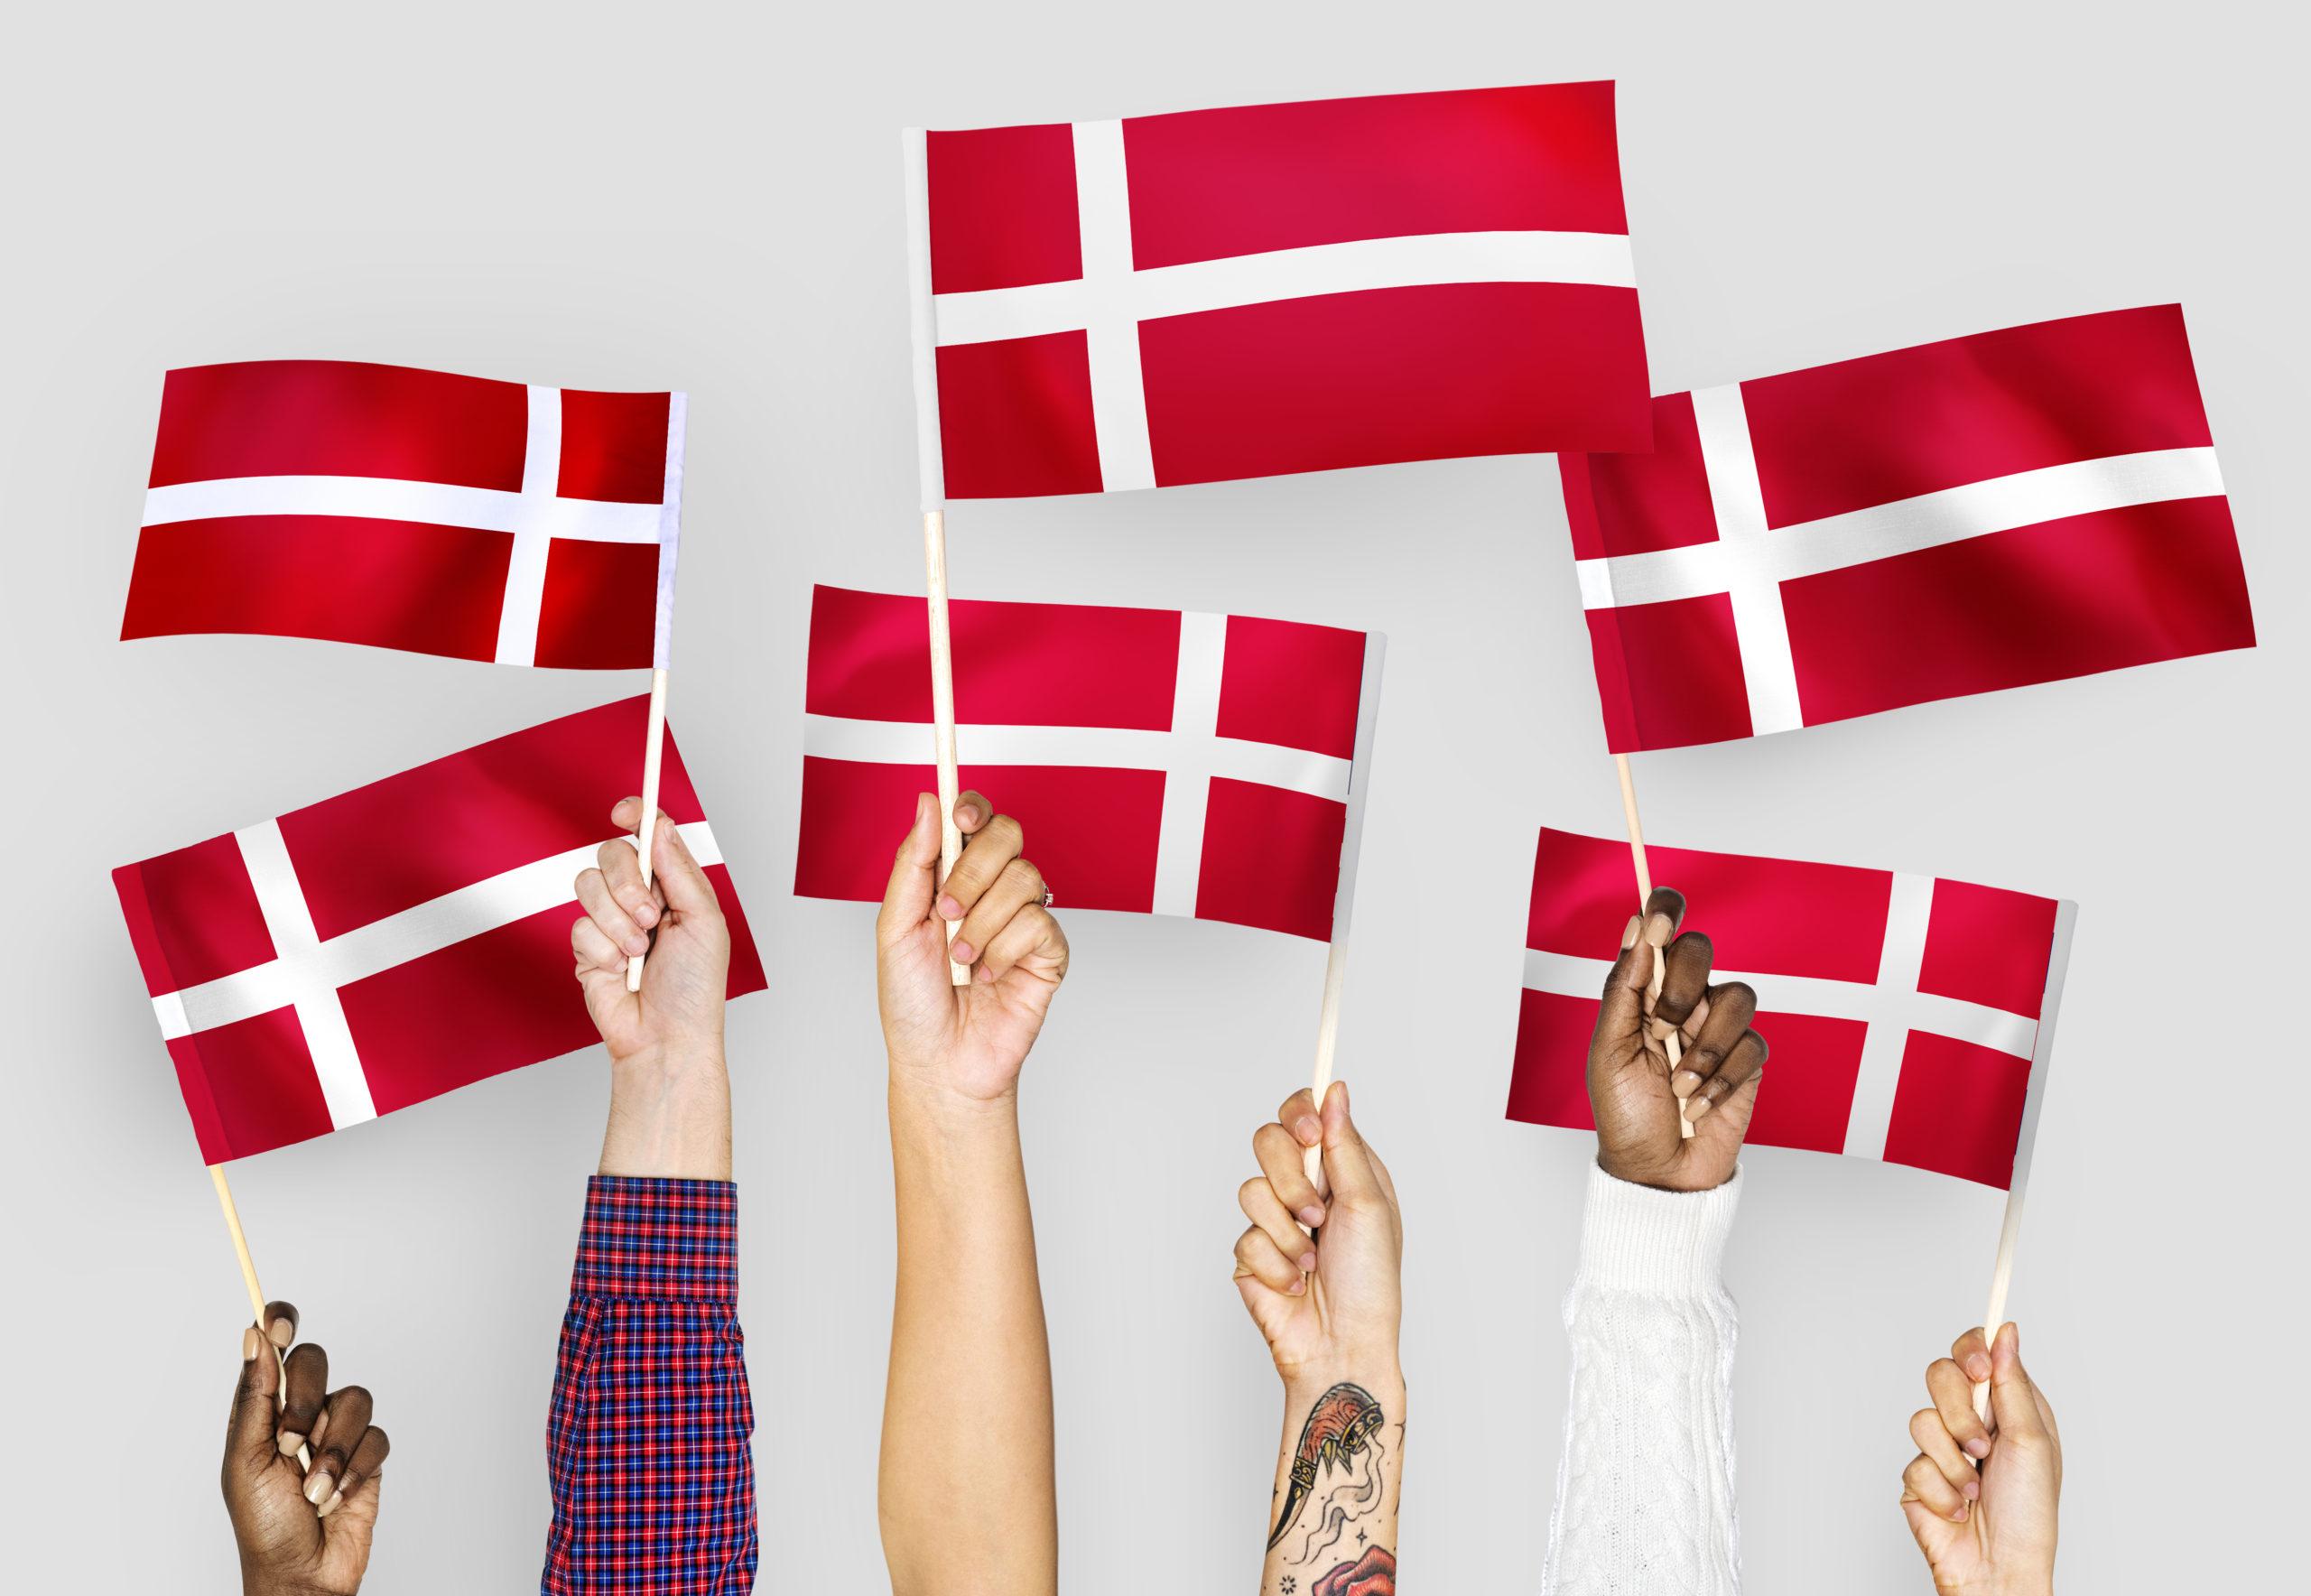 Wybierając studia w Danii, warto zapamiętać charakterystyczny wygląd flagi duńskiej